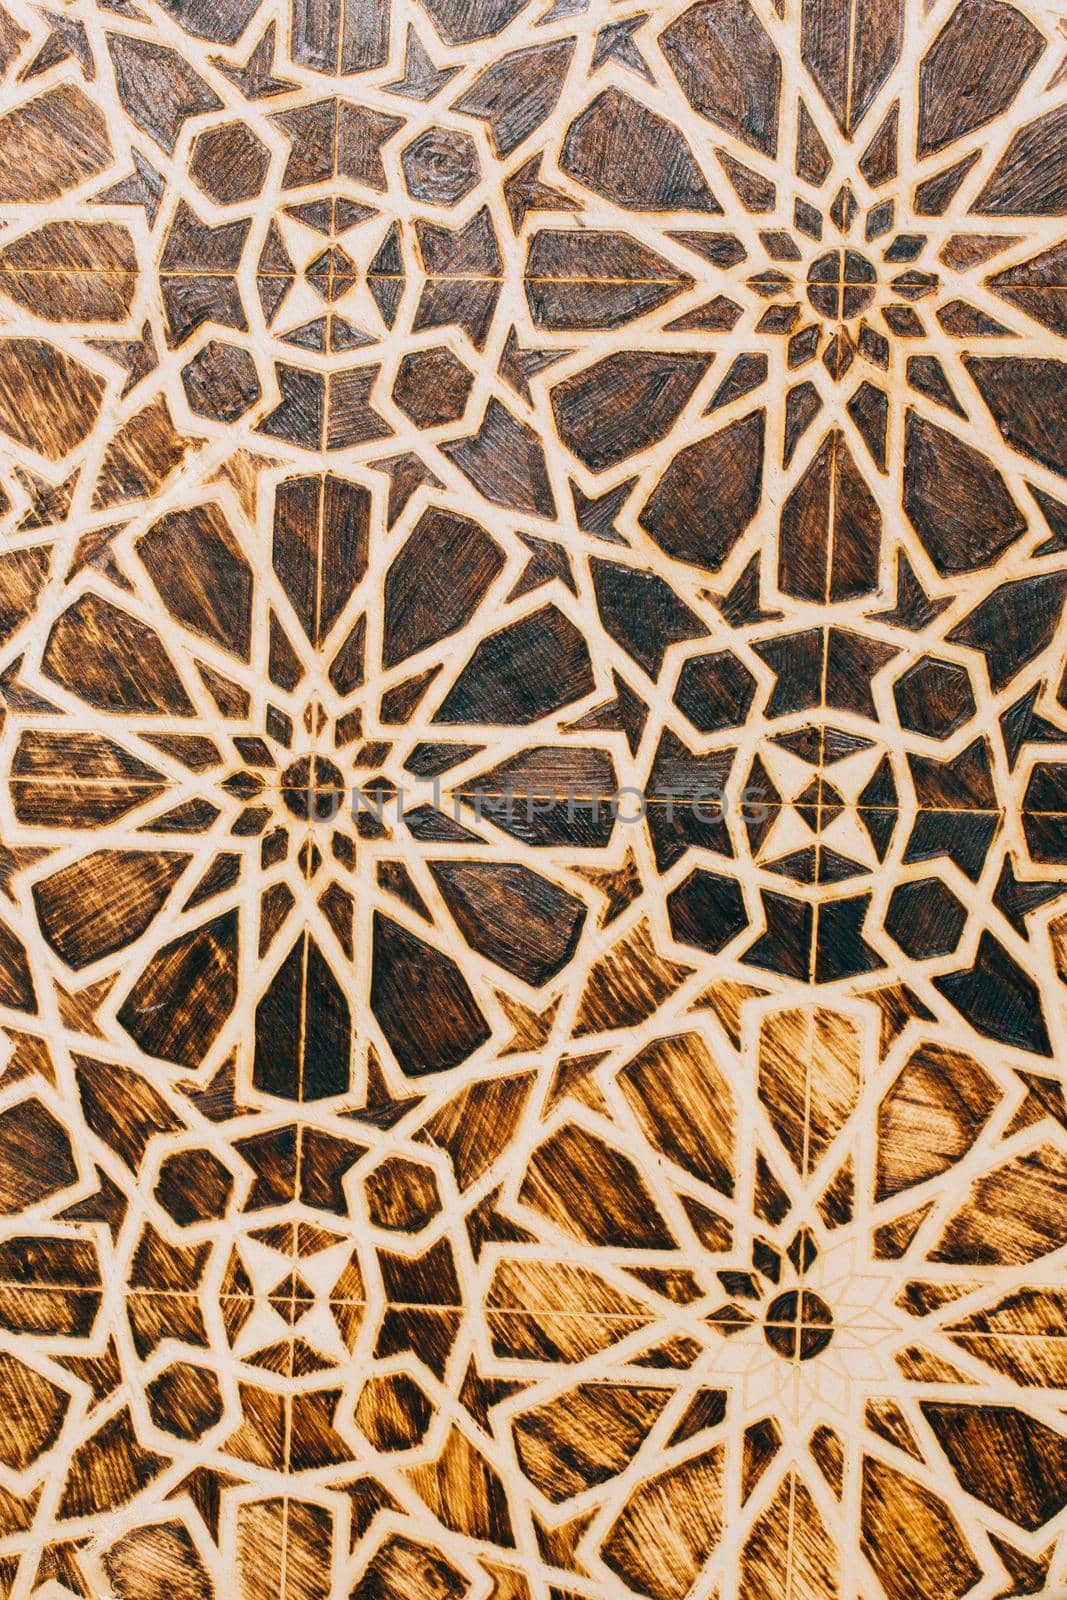 Ottoman Turkish  art with geometric patterns  by berkay